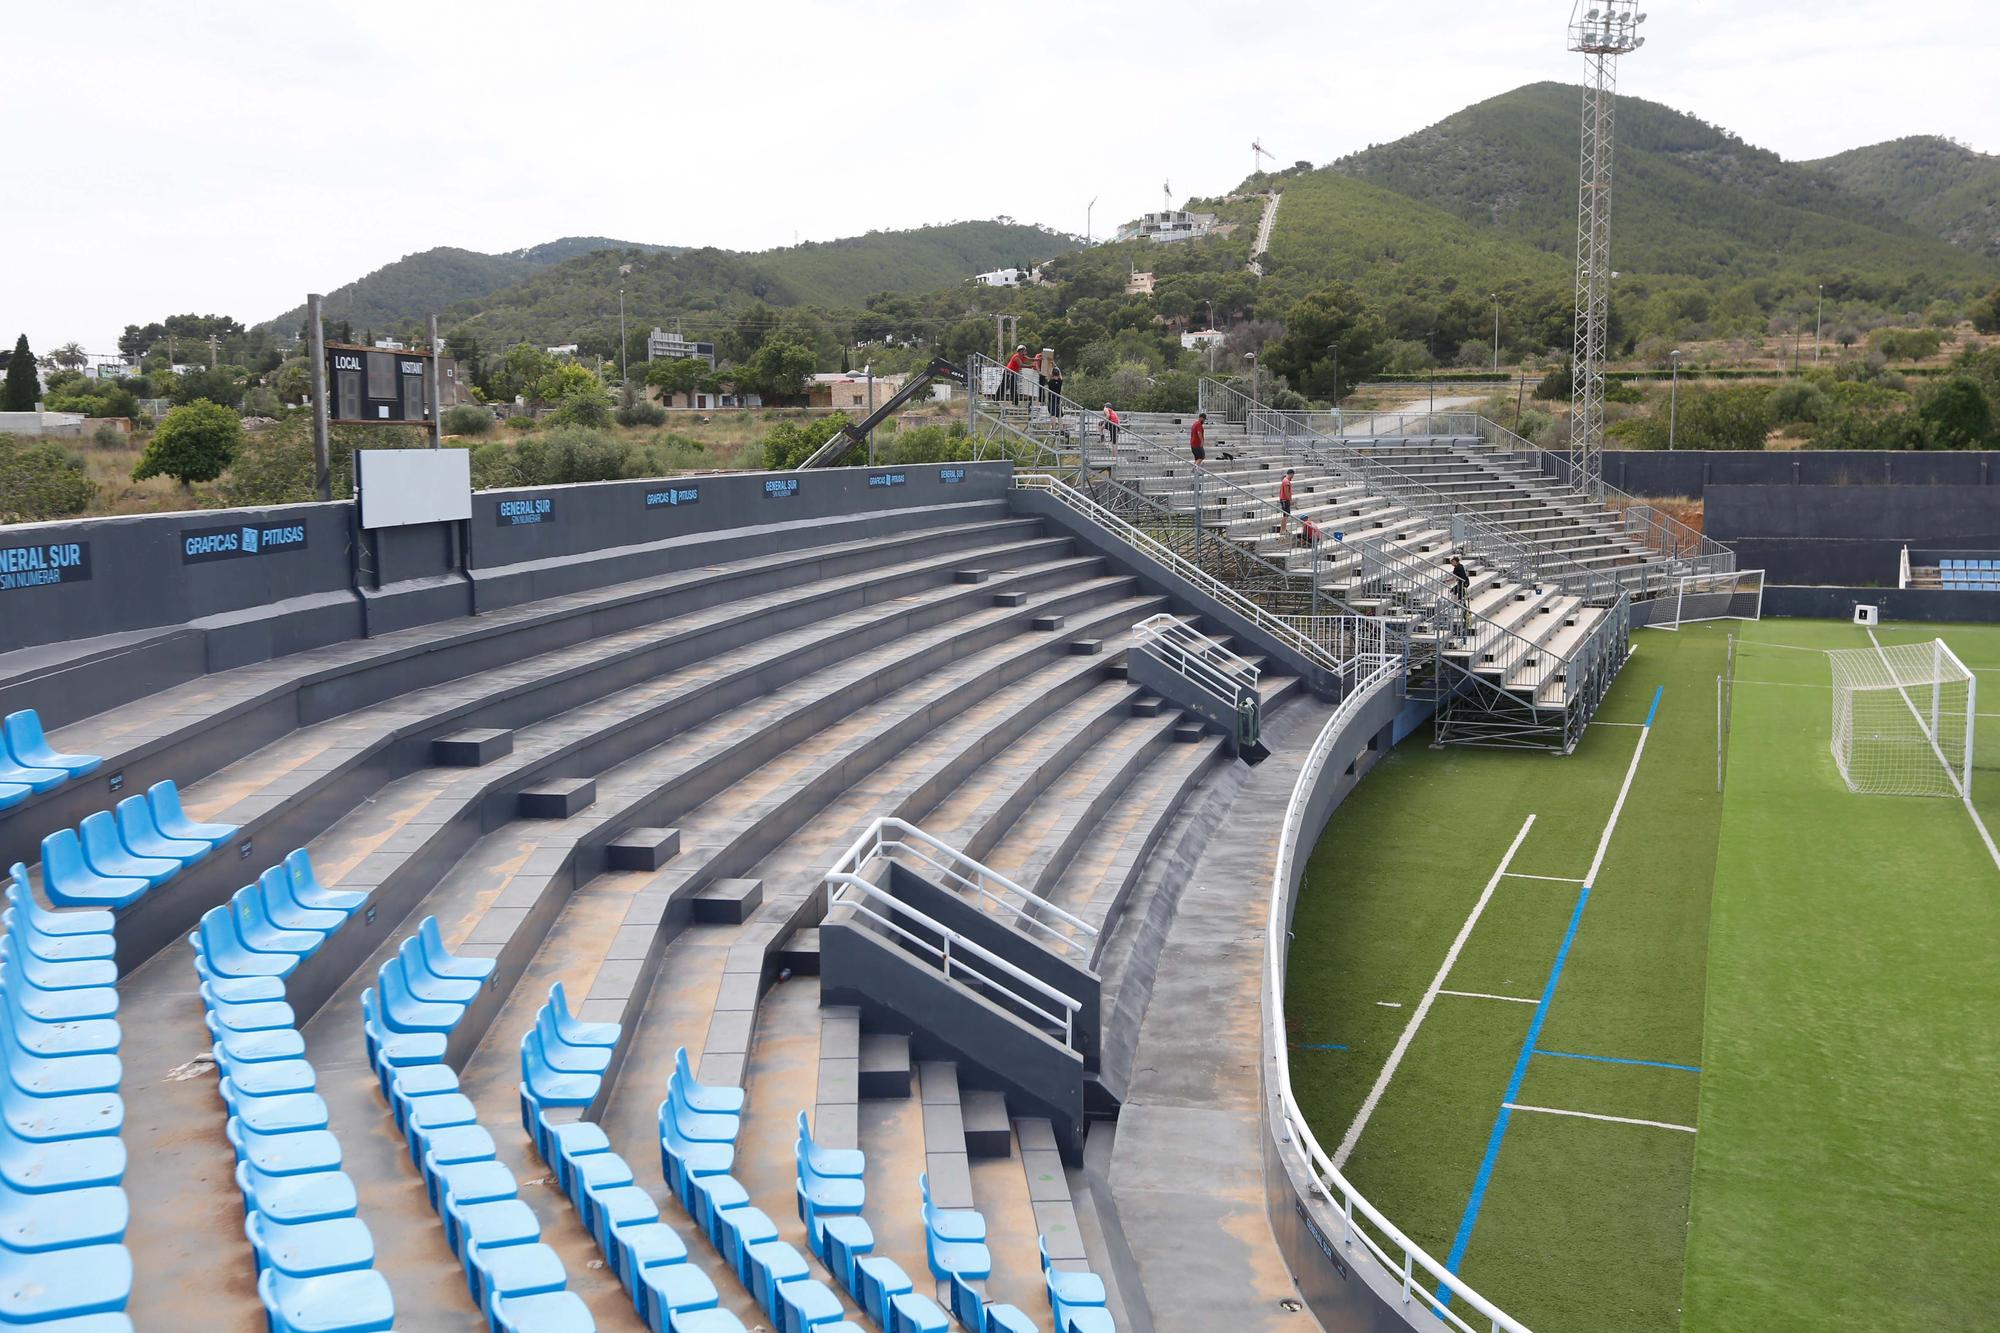 Empieza la transformación del estadio de Can Misses en Ibiza